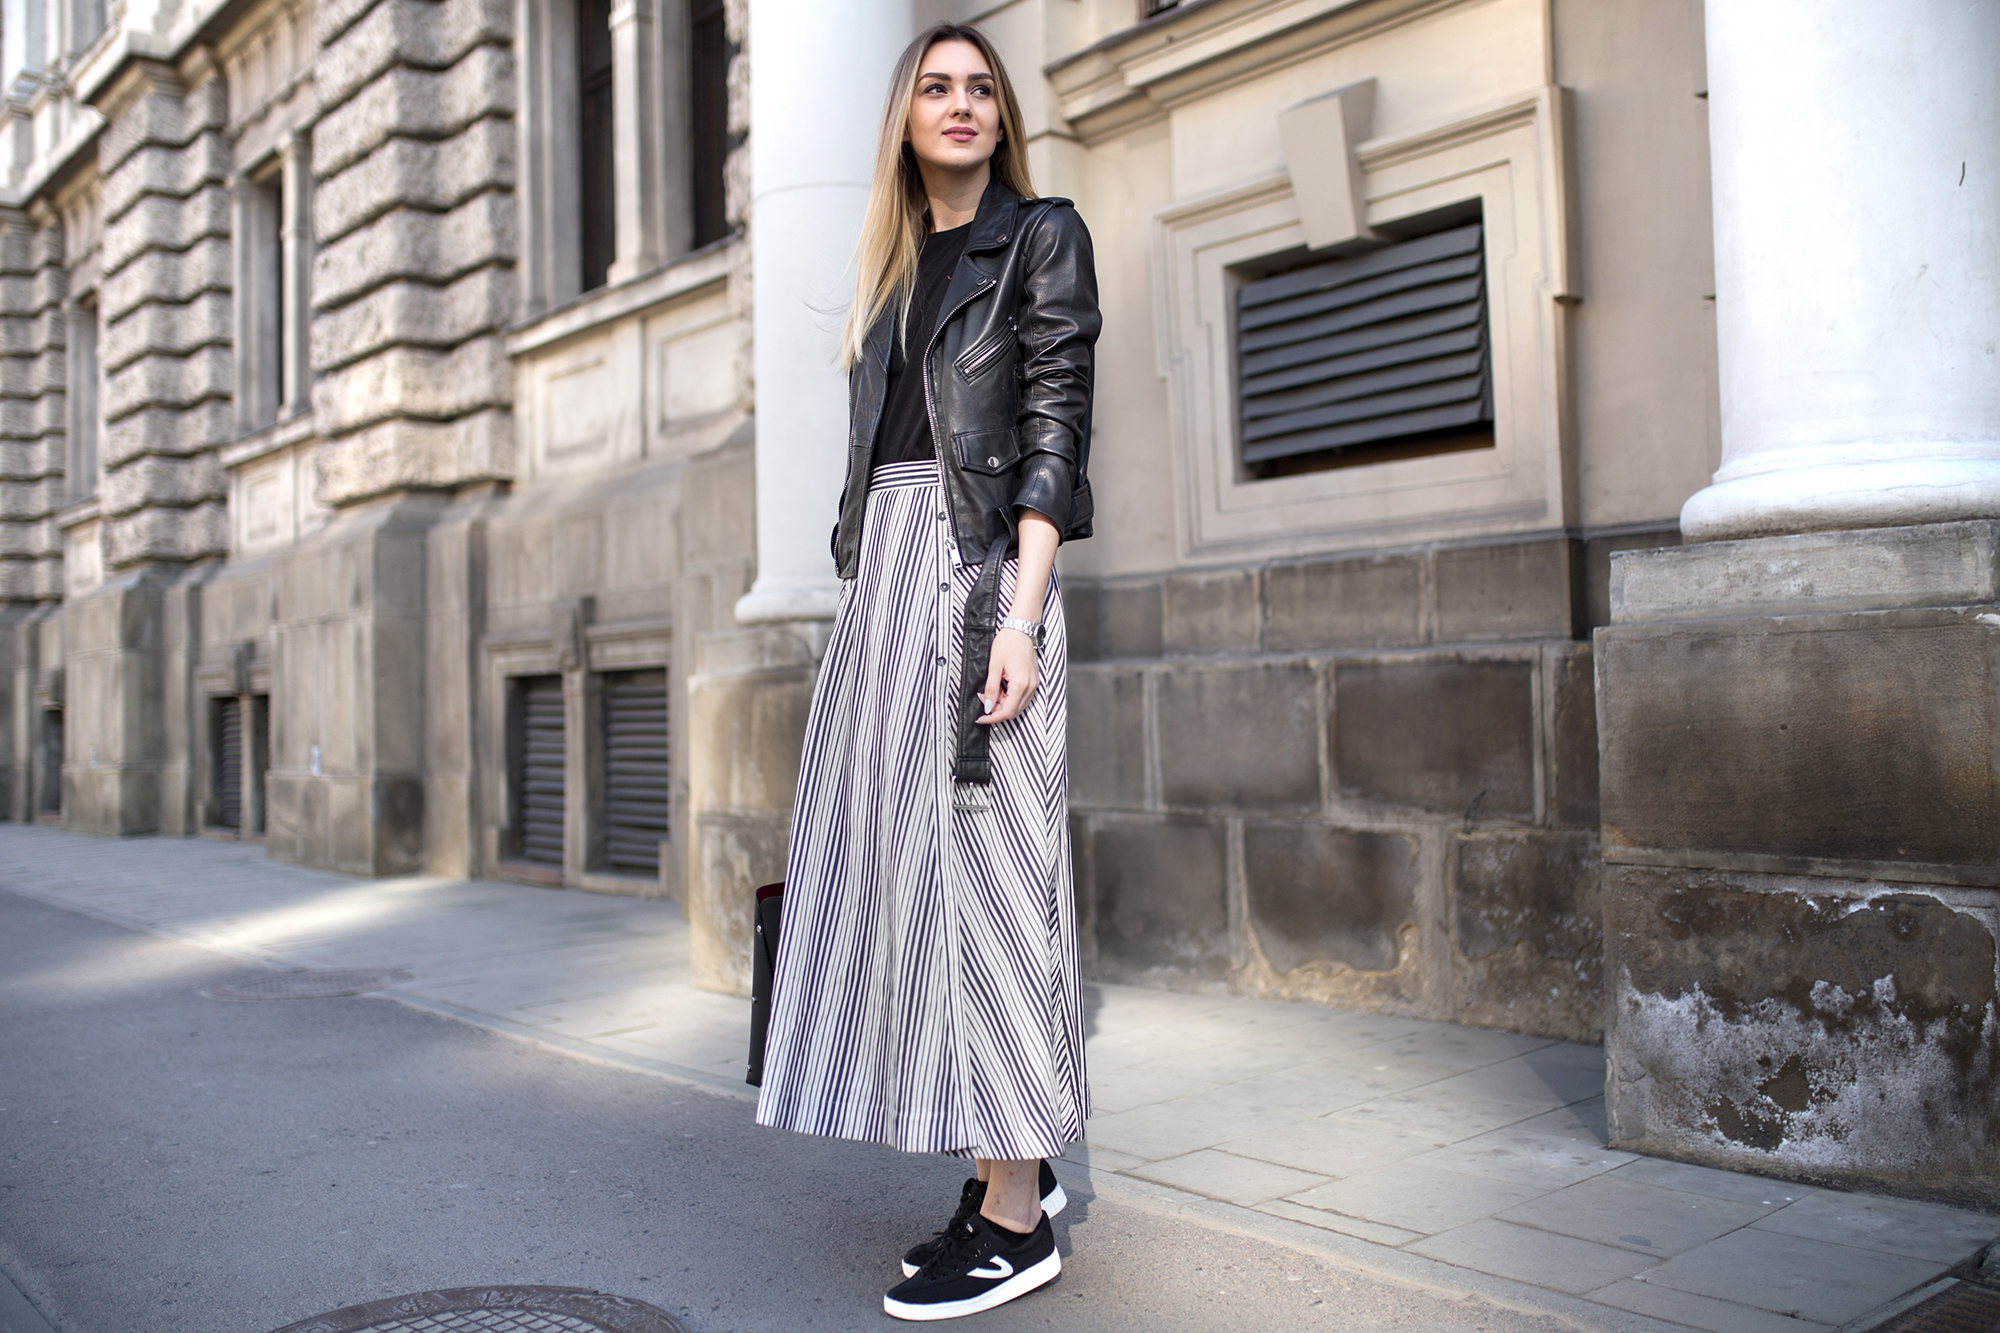 Falda midi con zapatillas: versatilidad y estilo para diferentes momentos